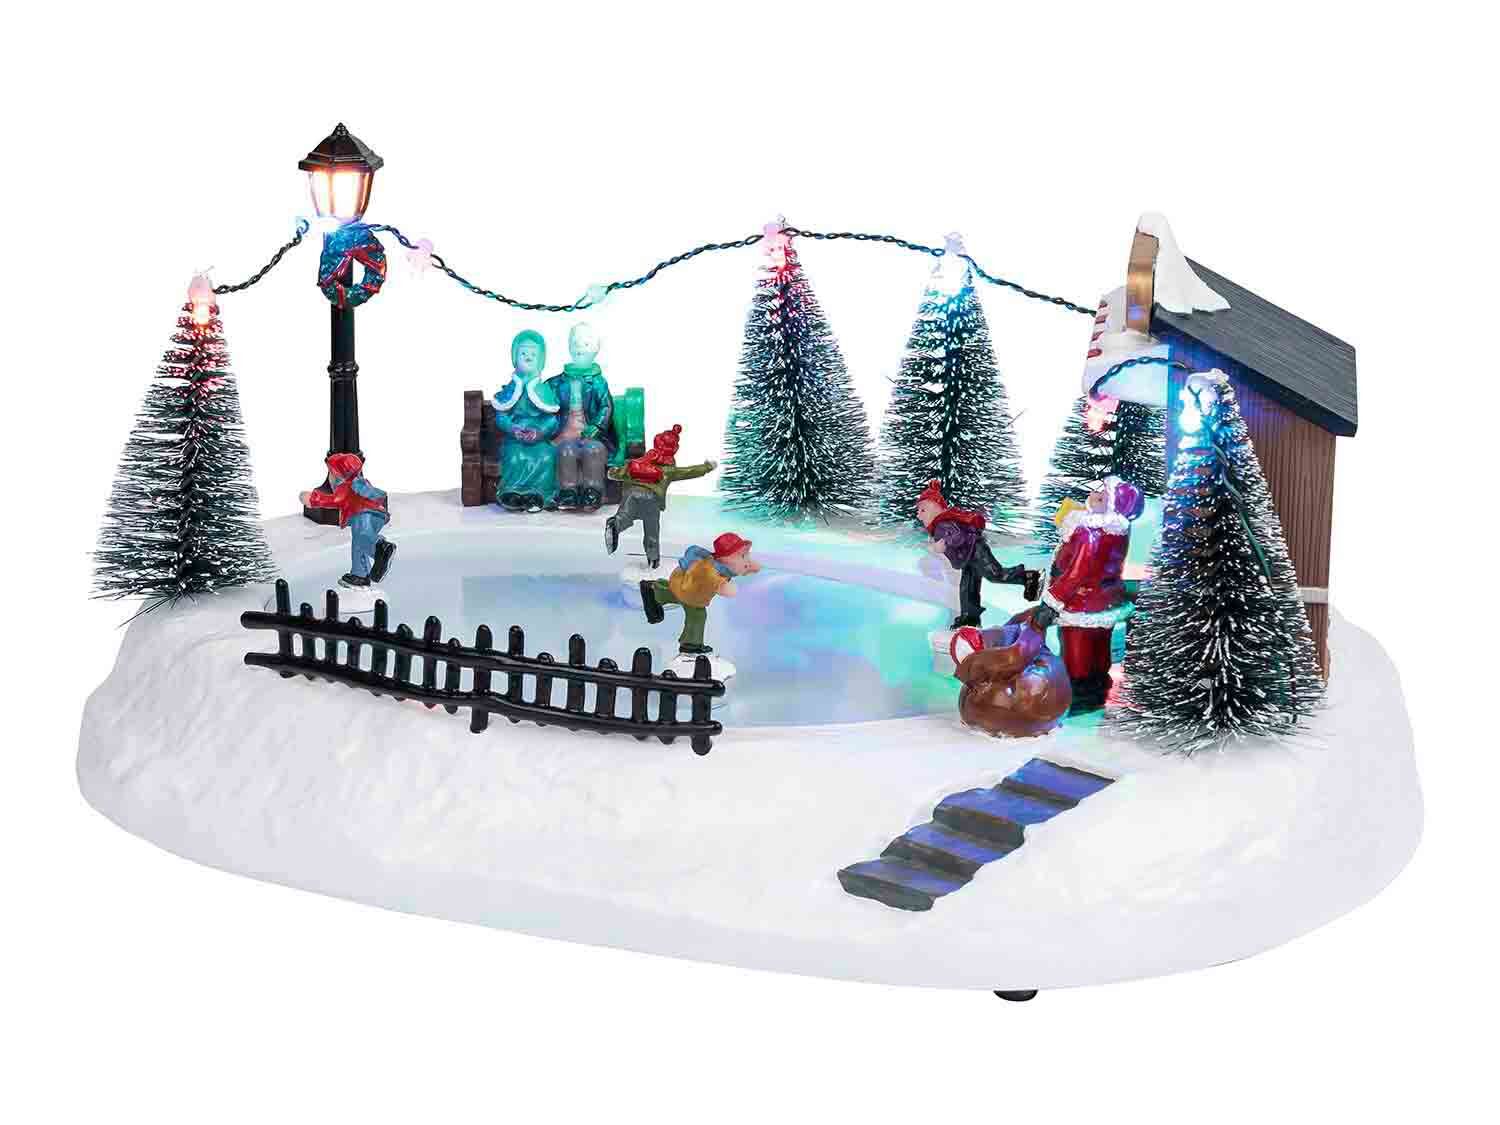 Pueblo navideño con 11 LEDS con pista de patinaje